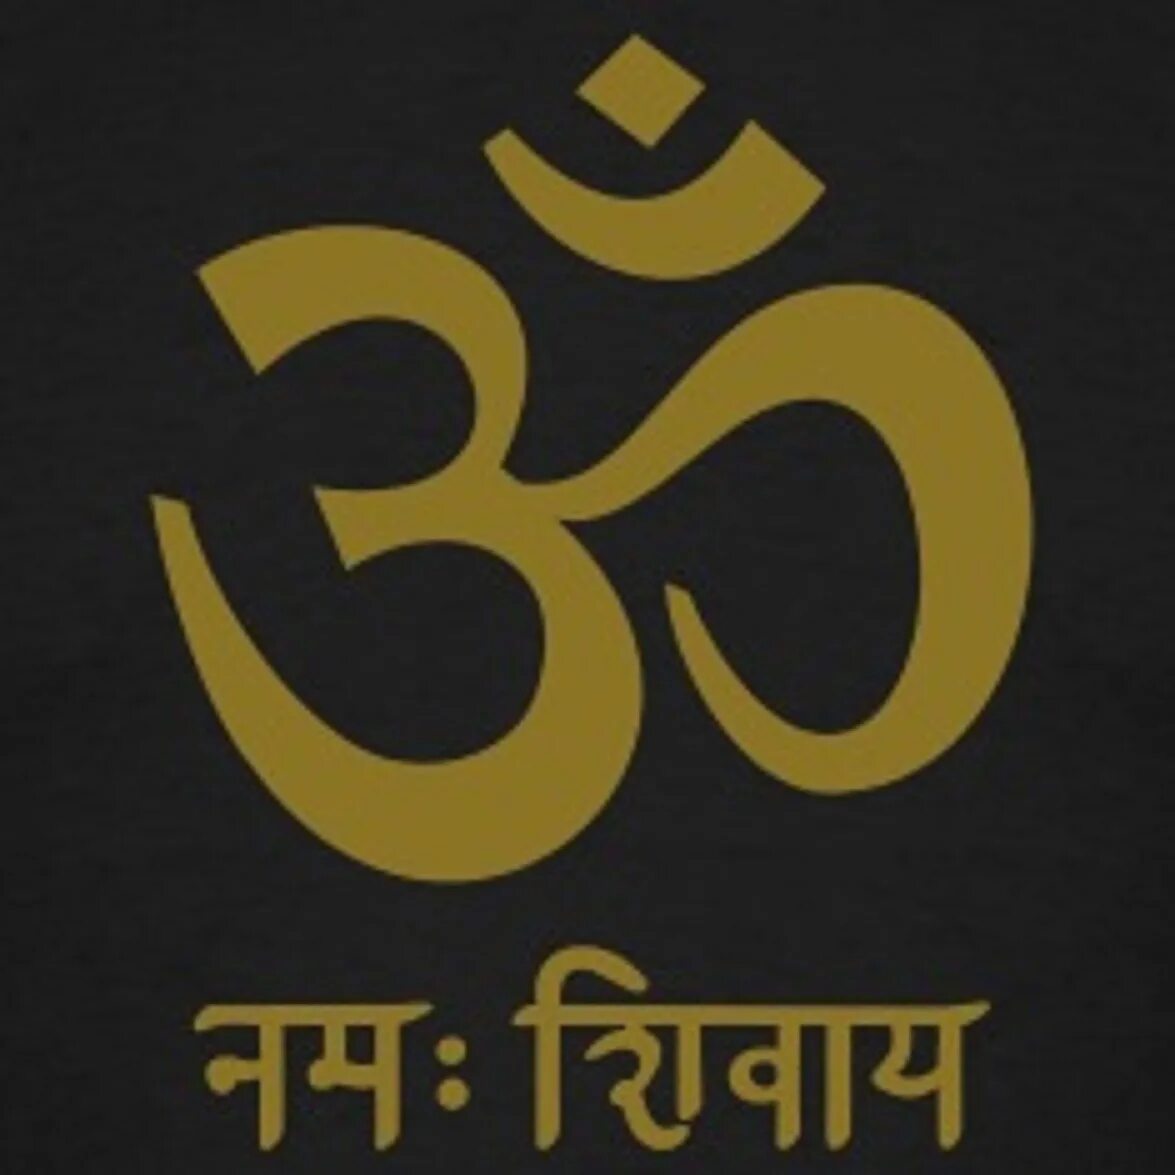 Om Namah Shivaya санскрит. Ом Намах Шивая на санскрите. Мантра ом Намах Шивайя на санскрите. Ом надпись на санскрите.